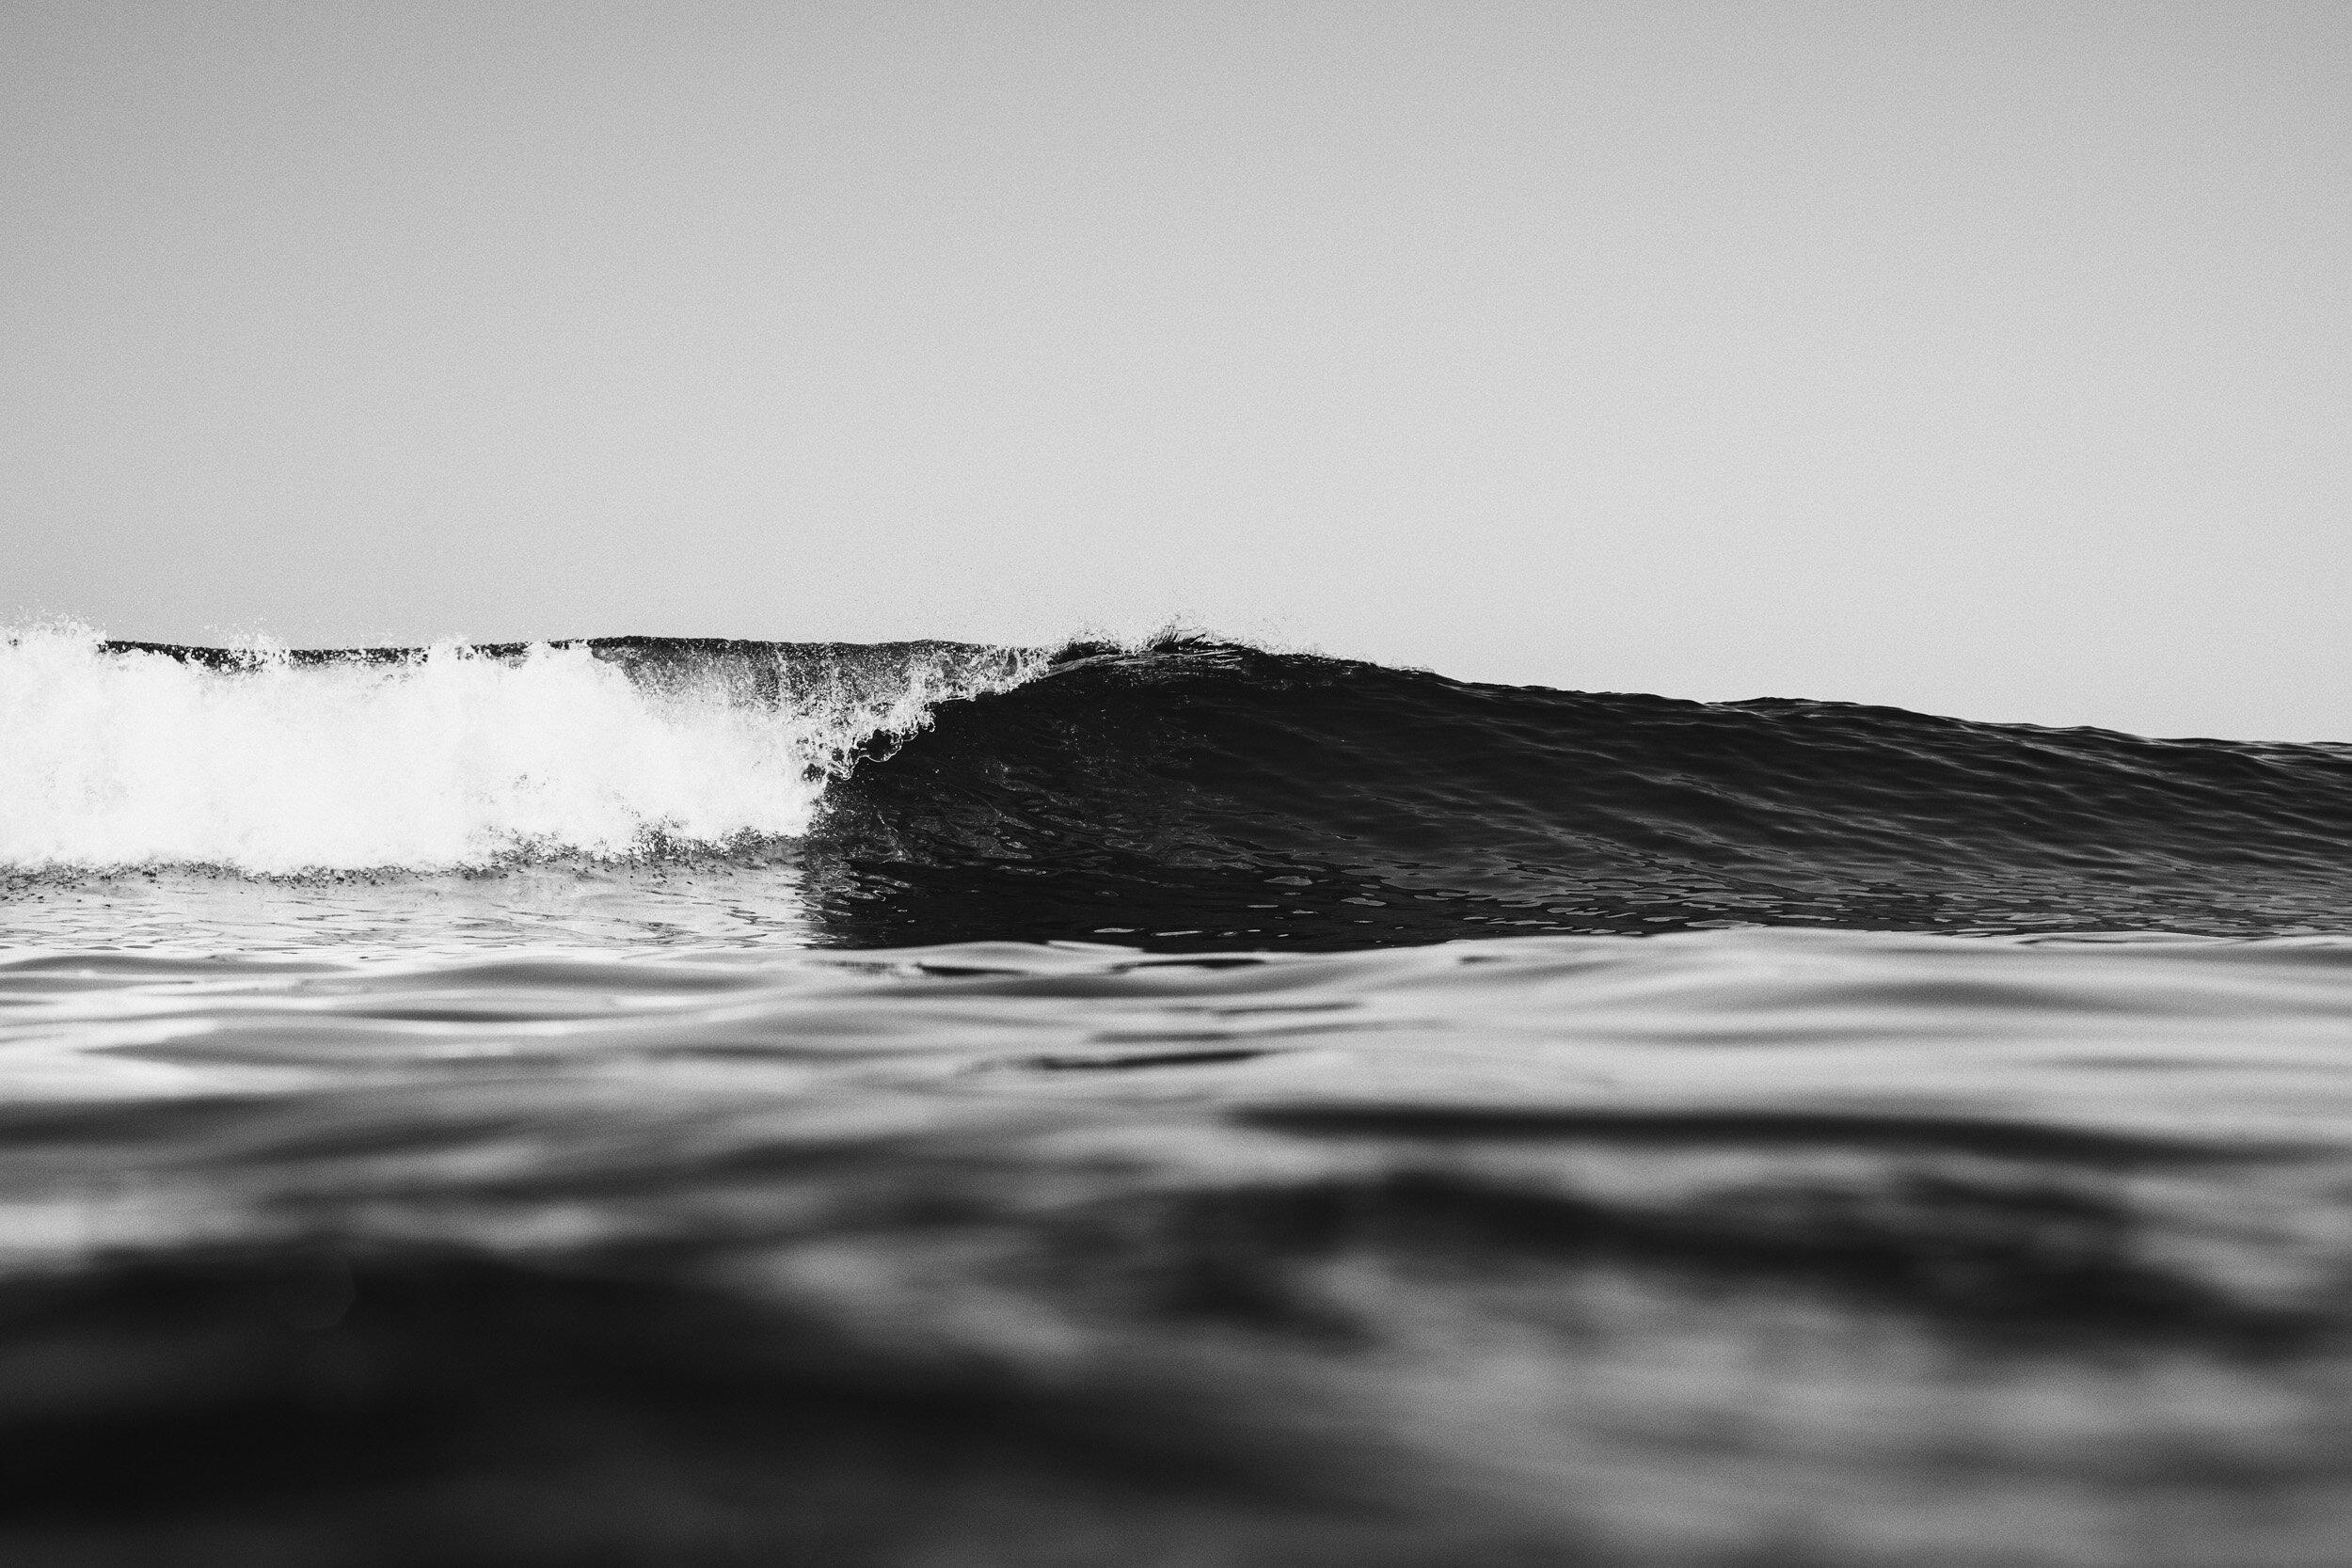 la-saladita-mexico-surf-longboard-fotografia-heiko-bothe-9848.jpg